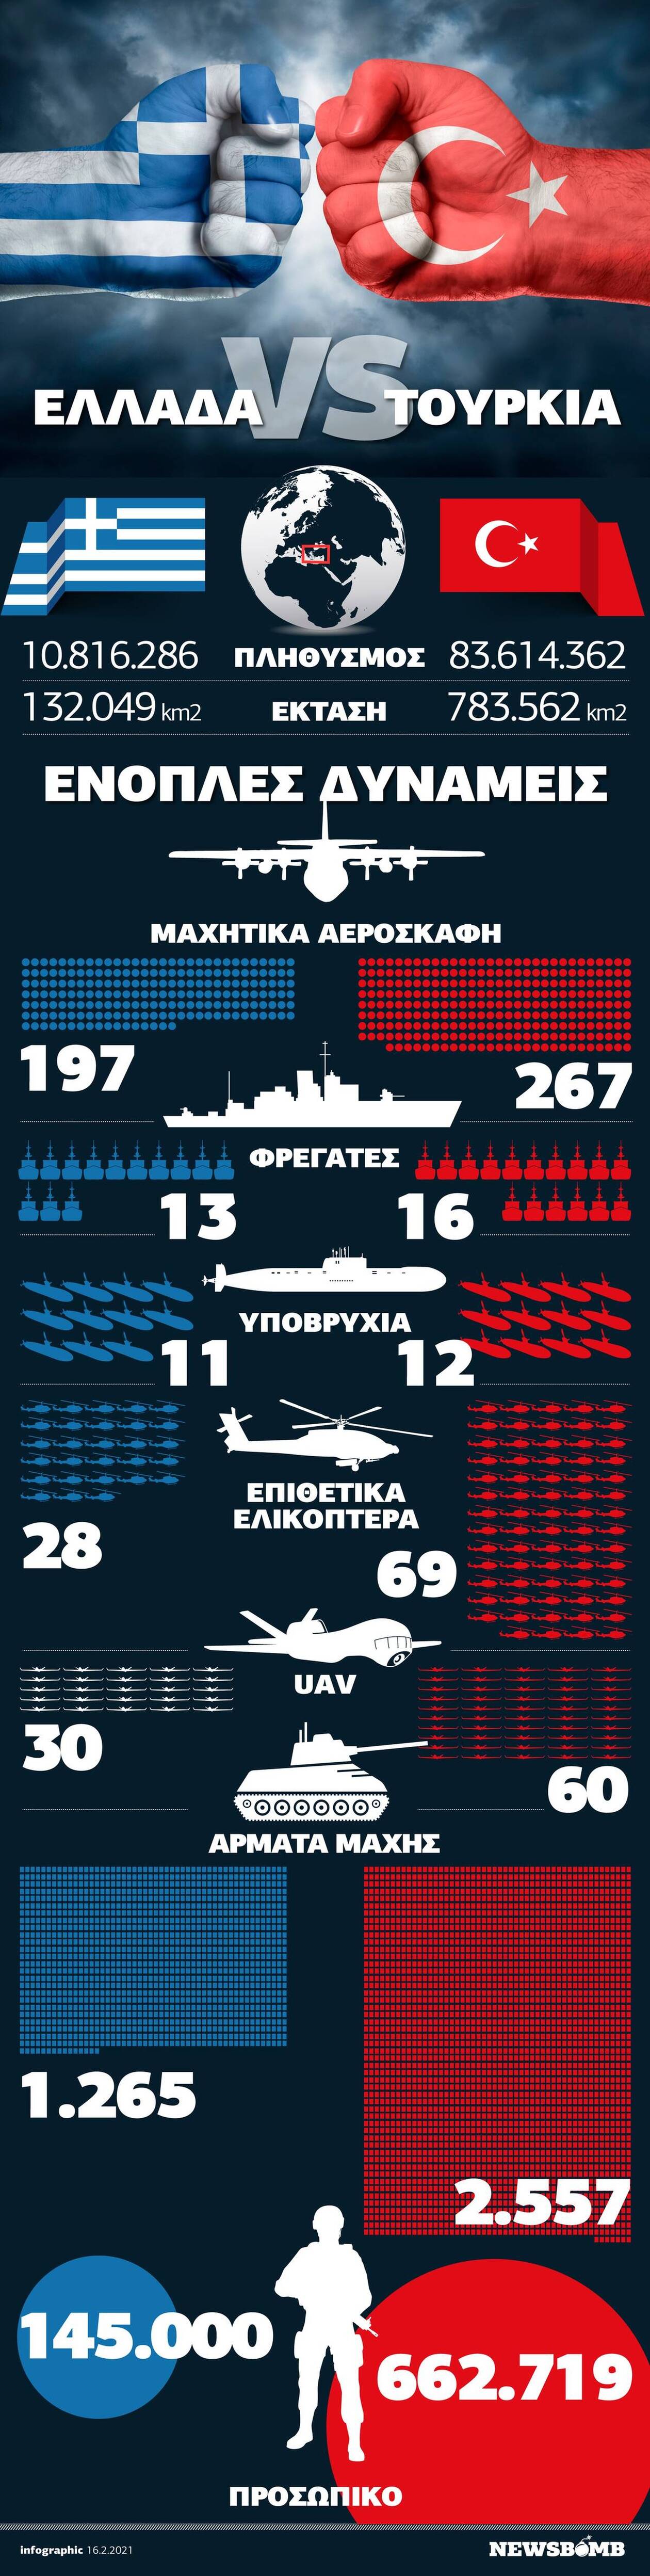 Ελλάδα VS Τουρκία: Ποιος είναι πιο ισχυρός στρατιωτικά; Δείτε το Infographic του Newsbomb.gr